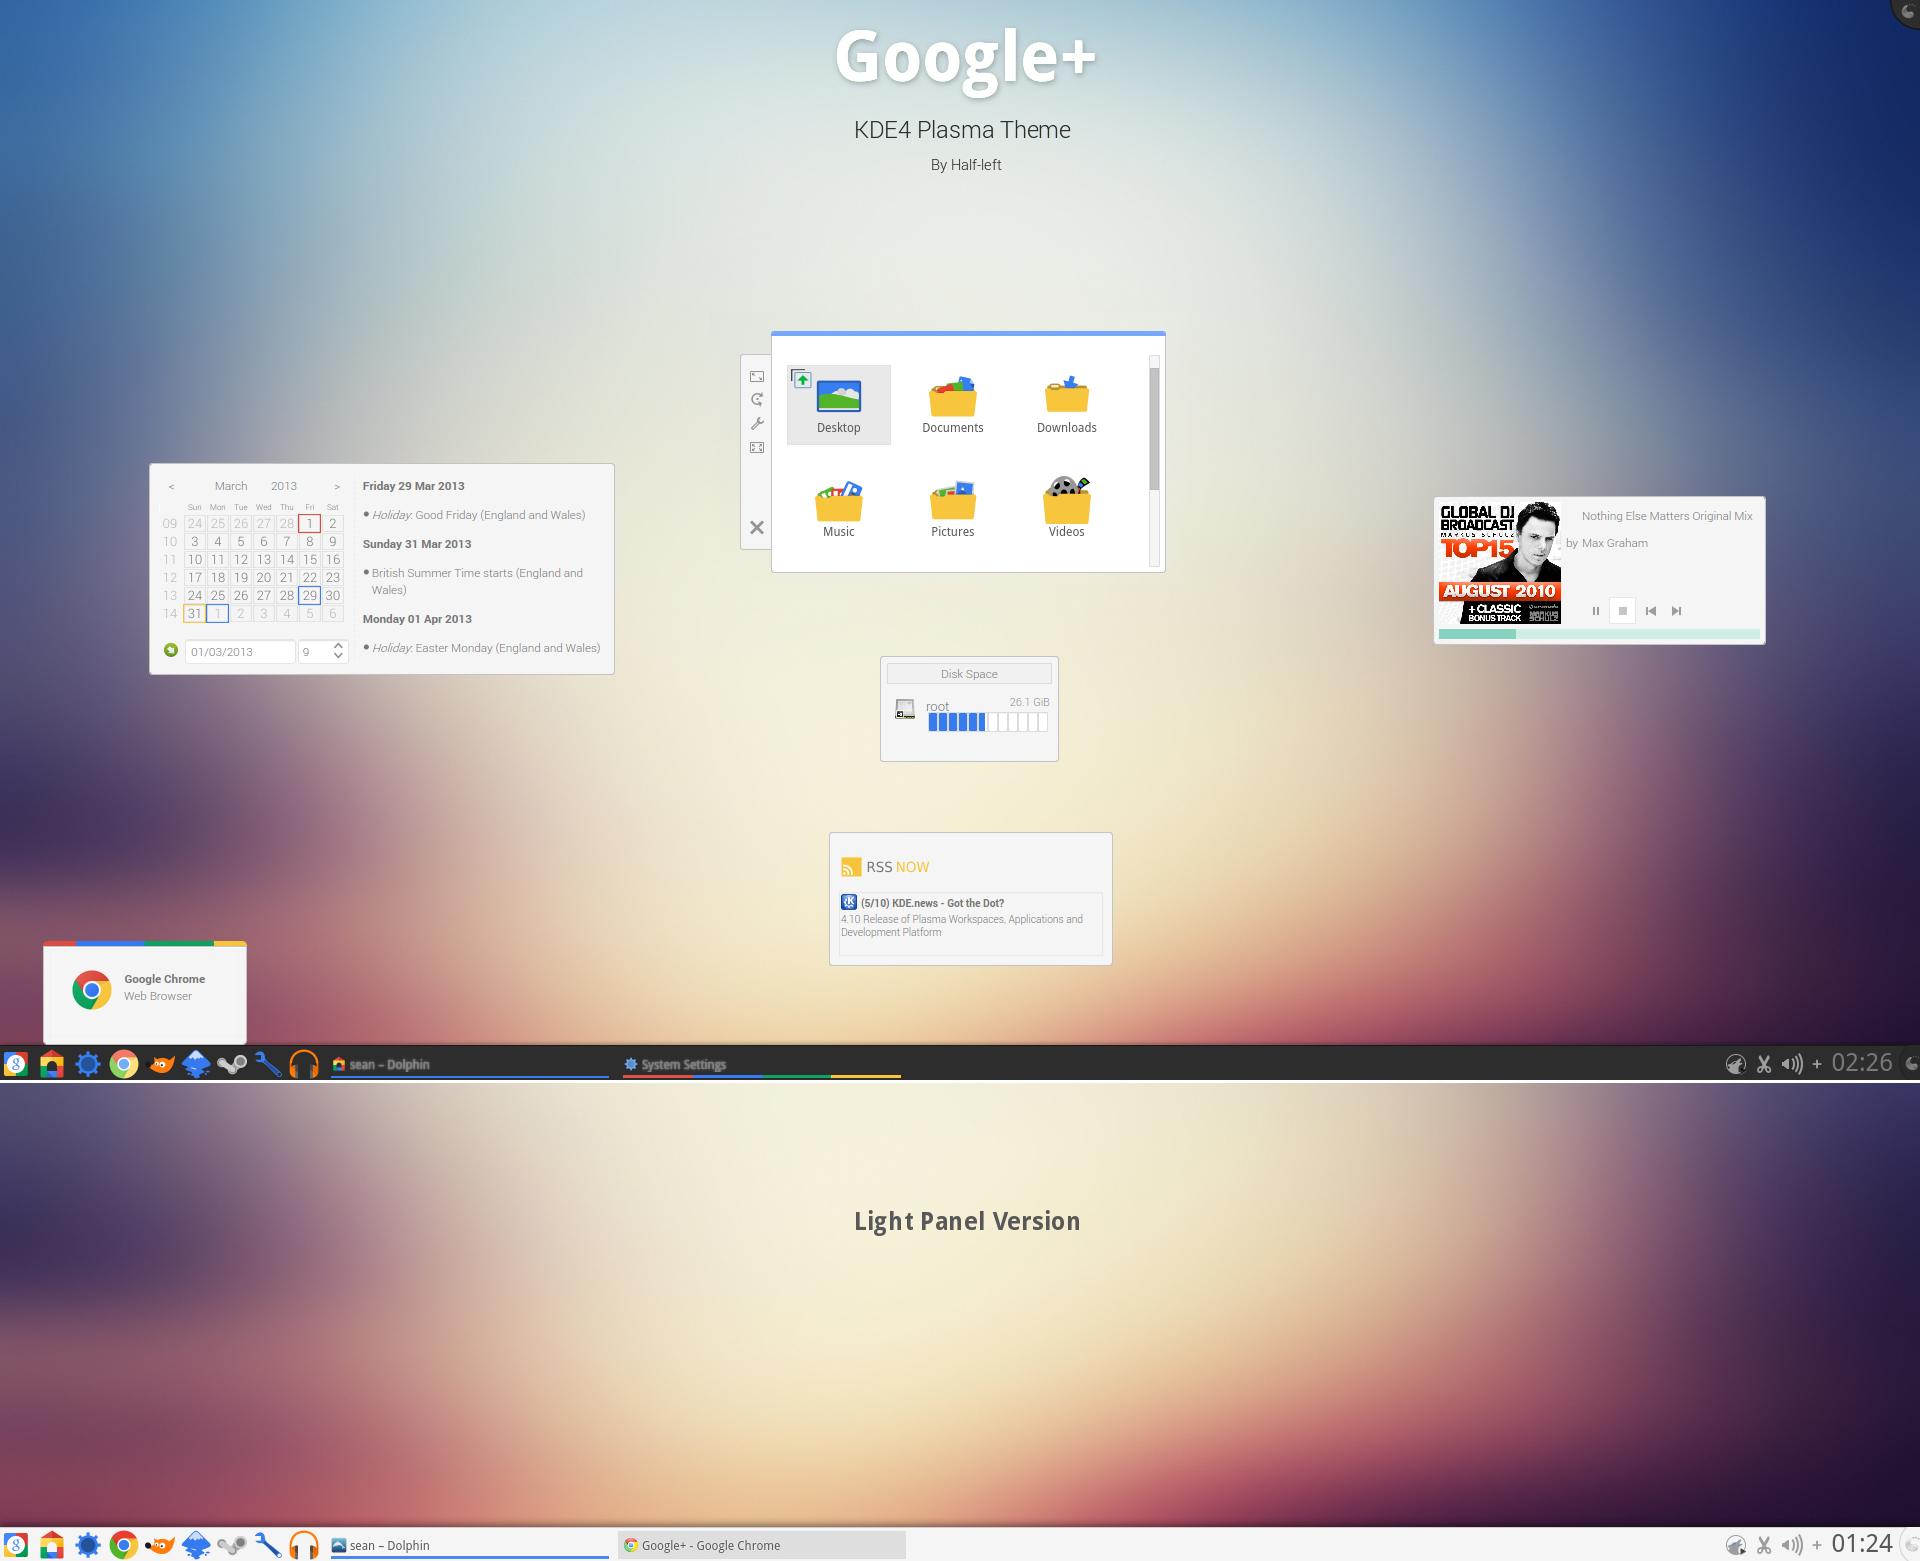 KDE4 - Google+